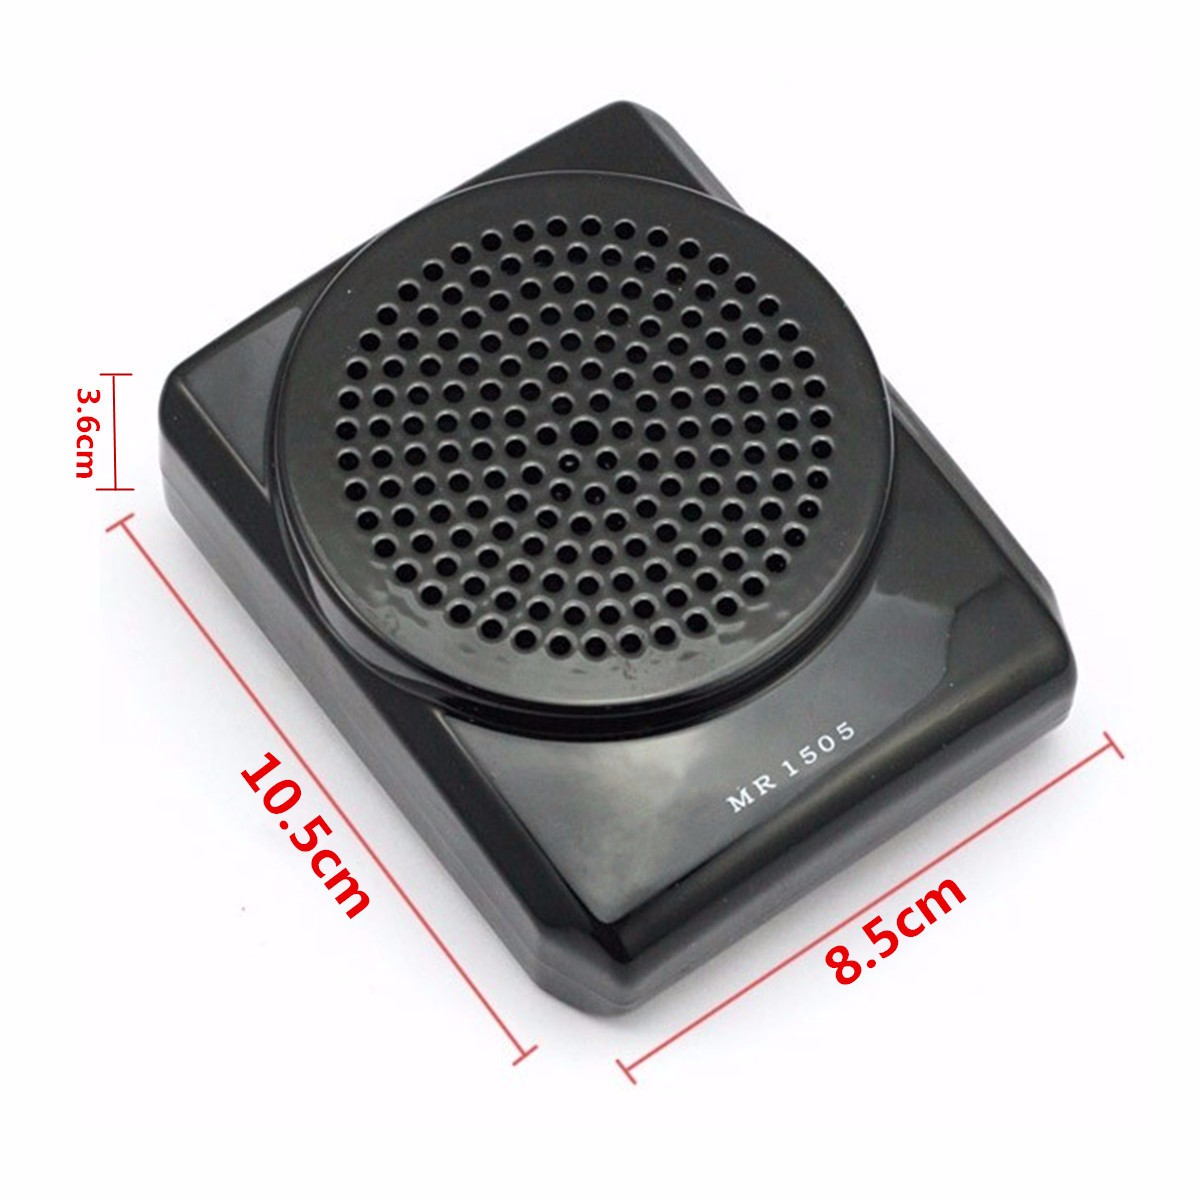 Aker-MR1505-Portable-10W-Loud-Voice-Booster-Microphone-Amplifier-Speaker-1169405